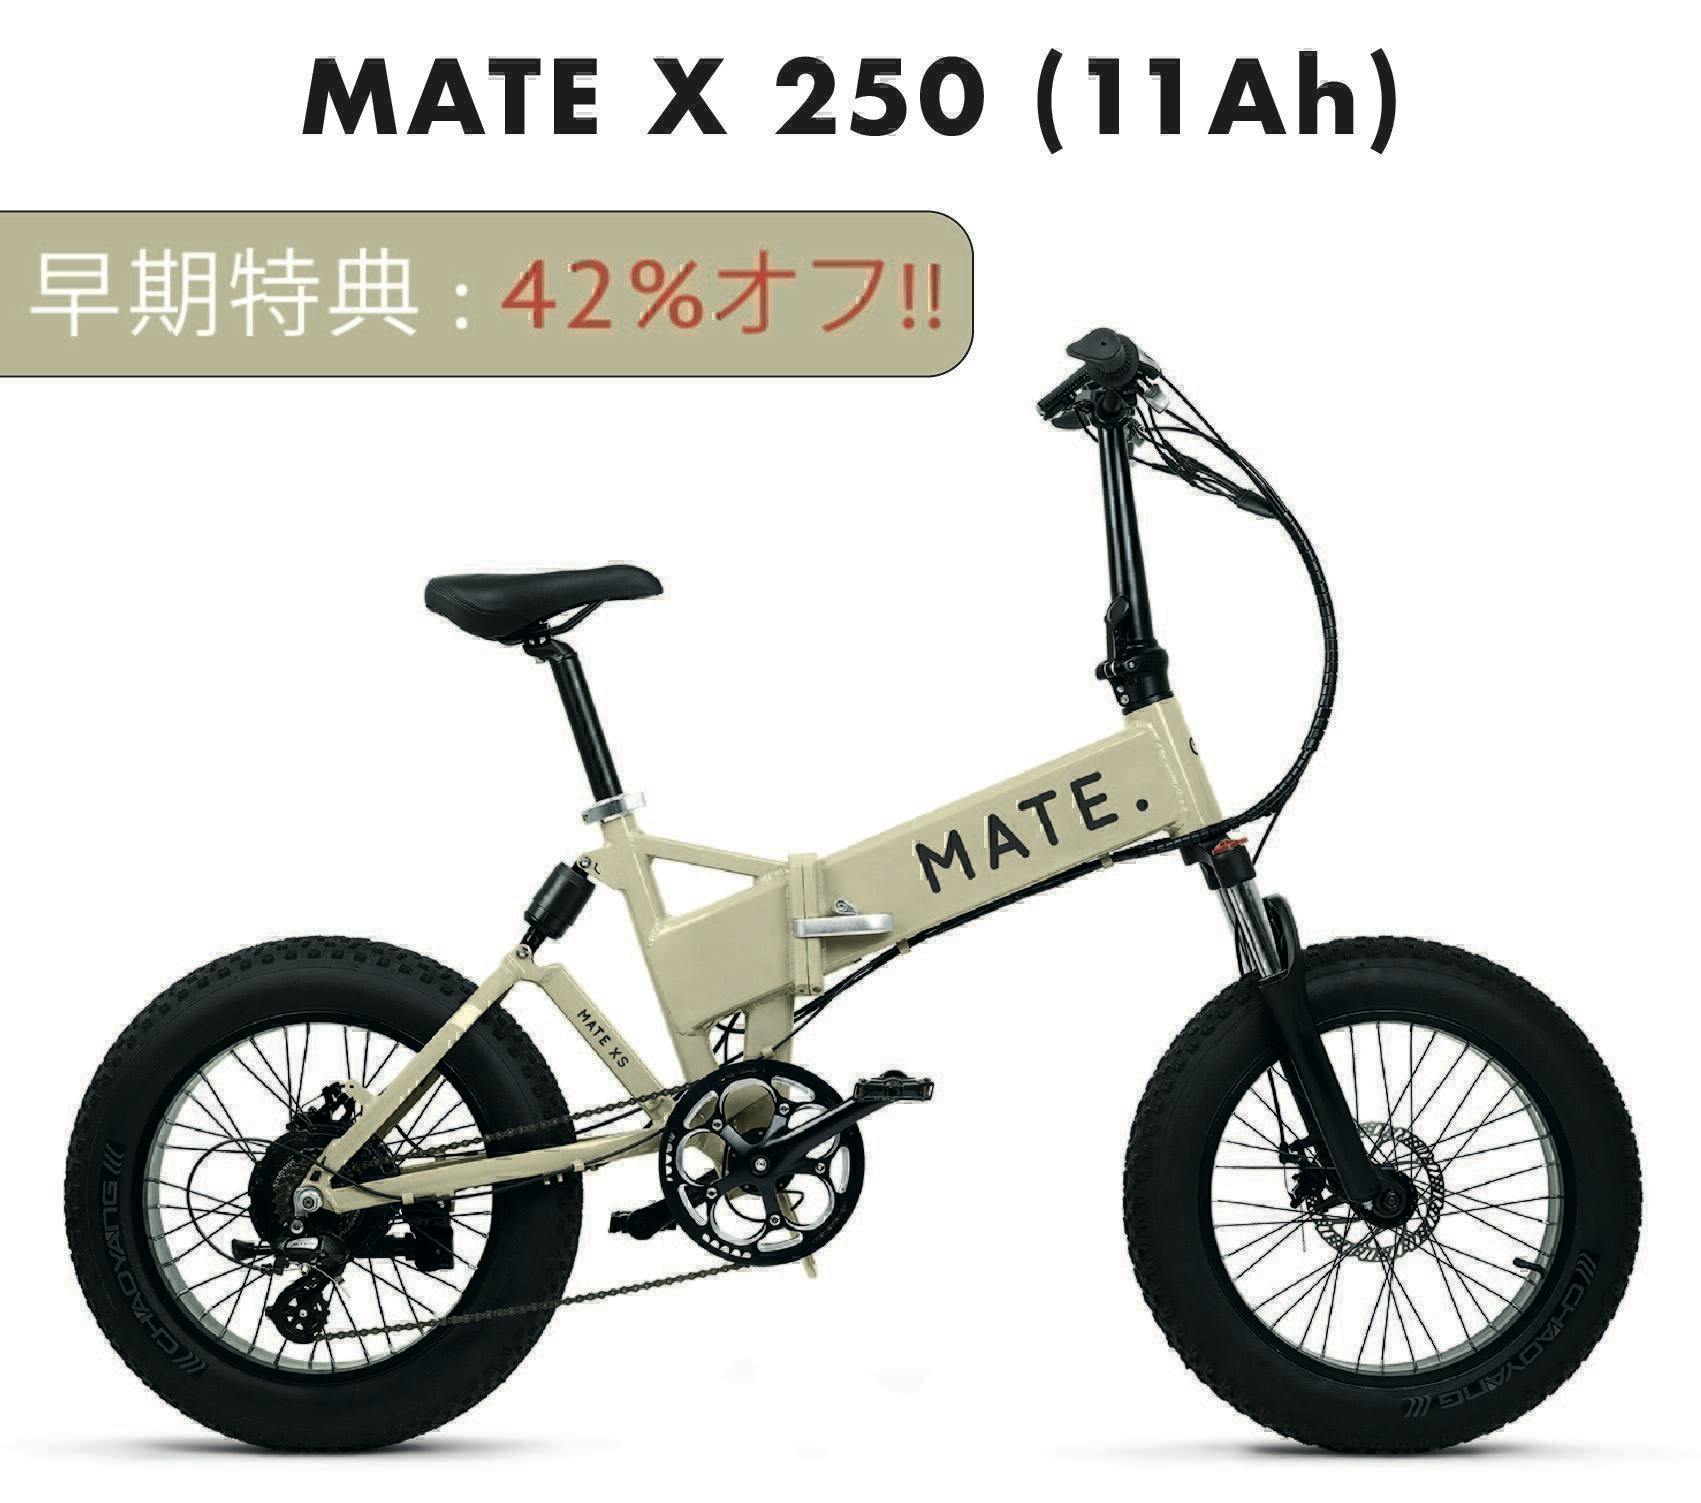 Mate X 750 マットブラック 日本未発売